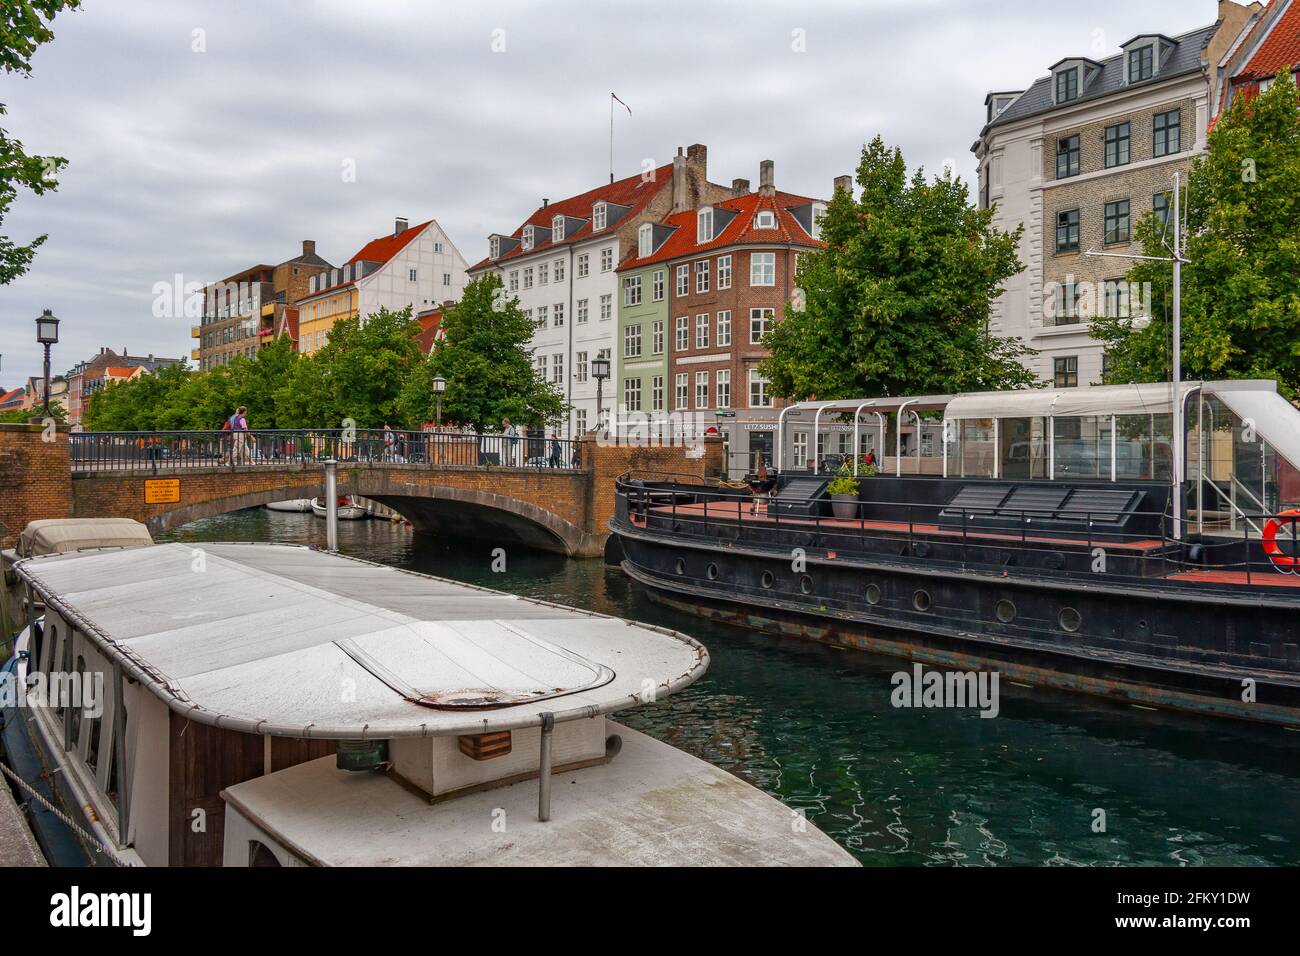 Einer der vielen Kanäle, die Kopenhagen mit den klassischen Booten pflügen, die als Restaurants oder für Touristen genutzt werden. Kopenhagen, Dänemark, Europa Stockfoto